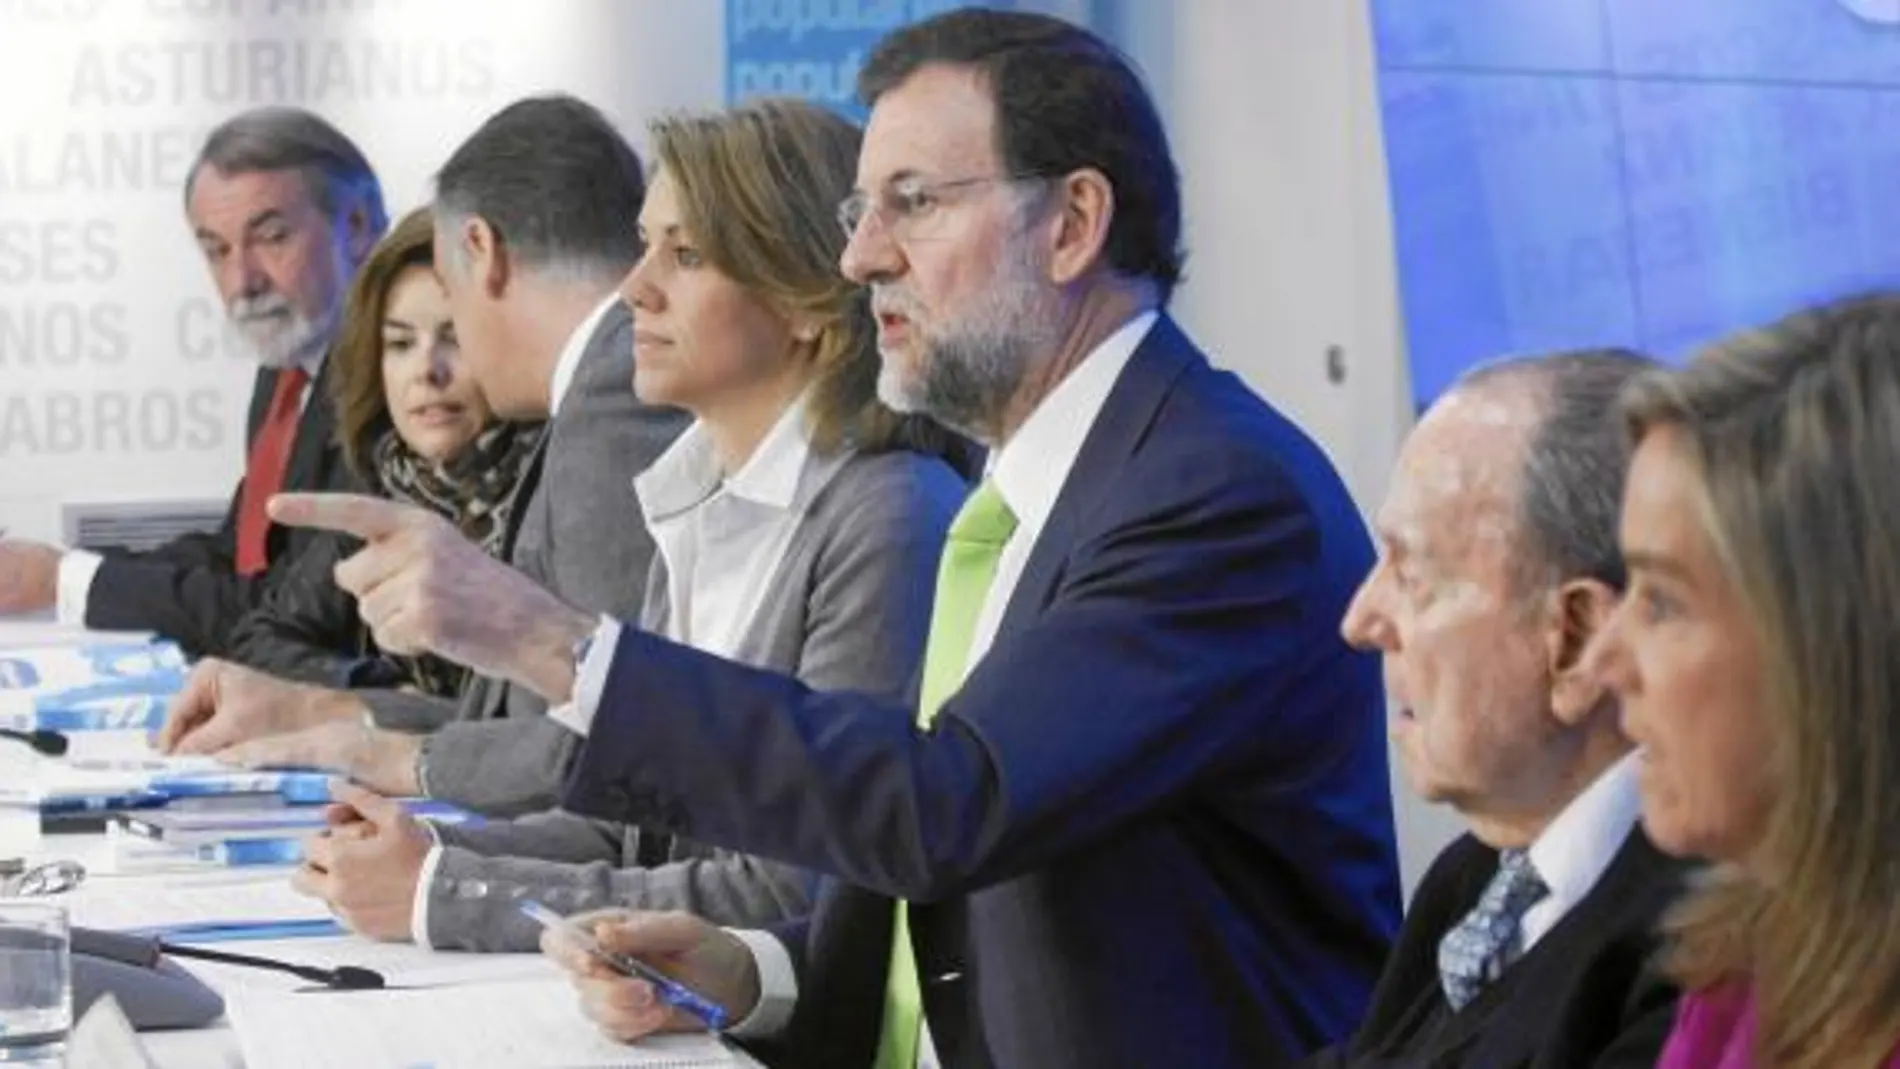 Rajoy enfría el triunfalismo y las expectativas para animar el voto